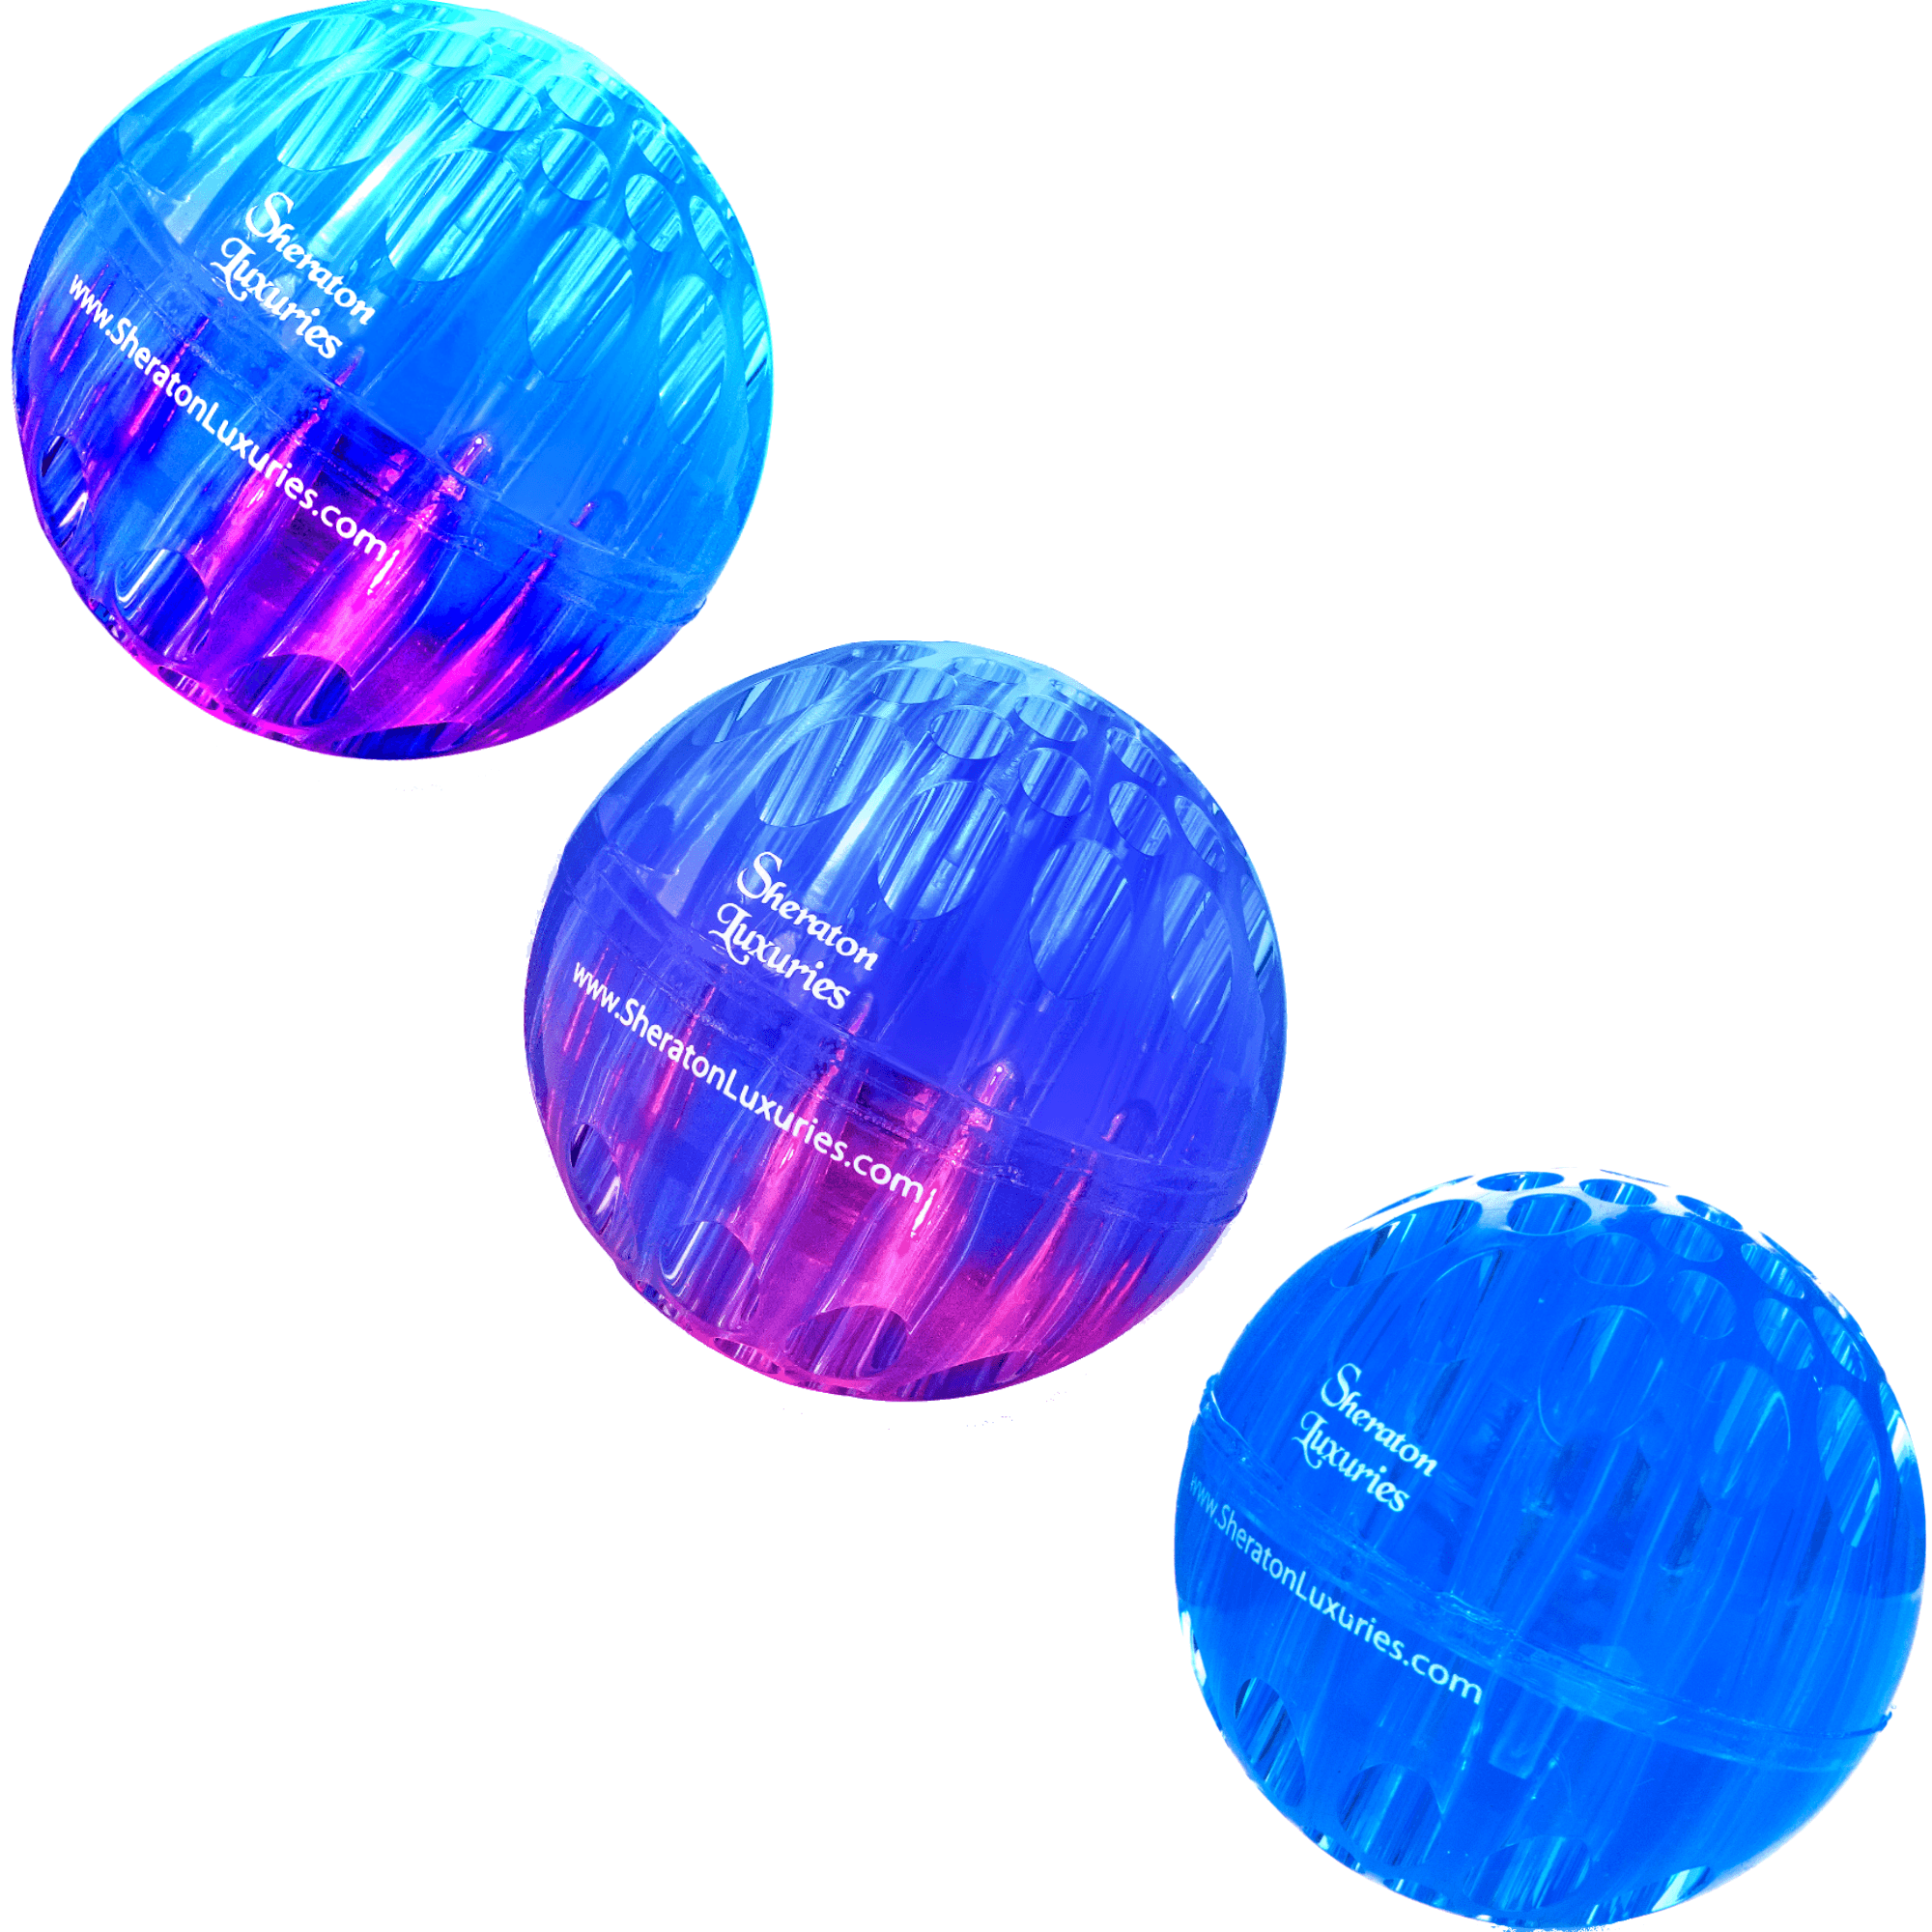 Светящийся резиновый мячик. Резиновые мячики для кошек. Флуоресцентный резиновый мяч. Двухцветный резиновый мяч. Звуки ball